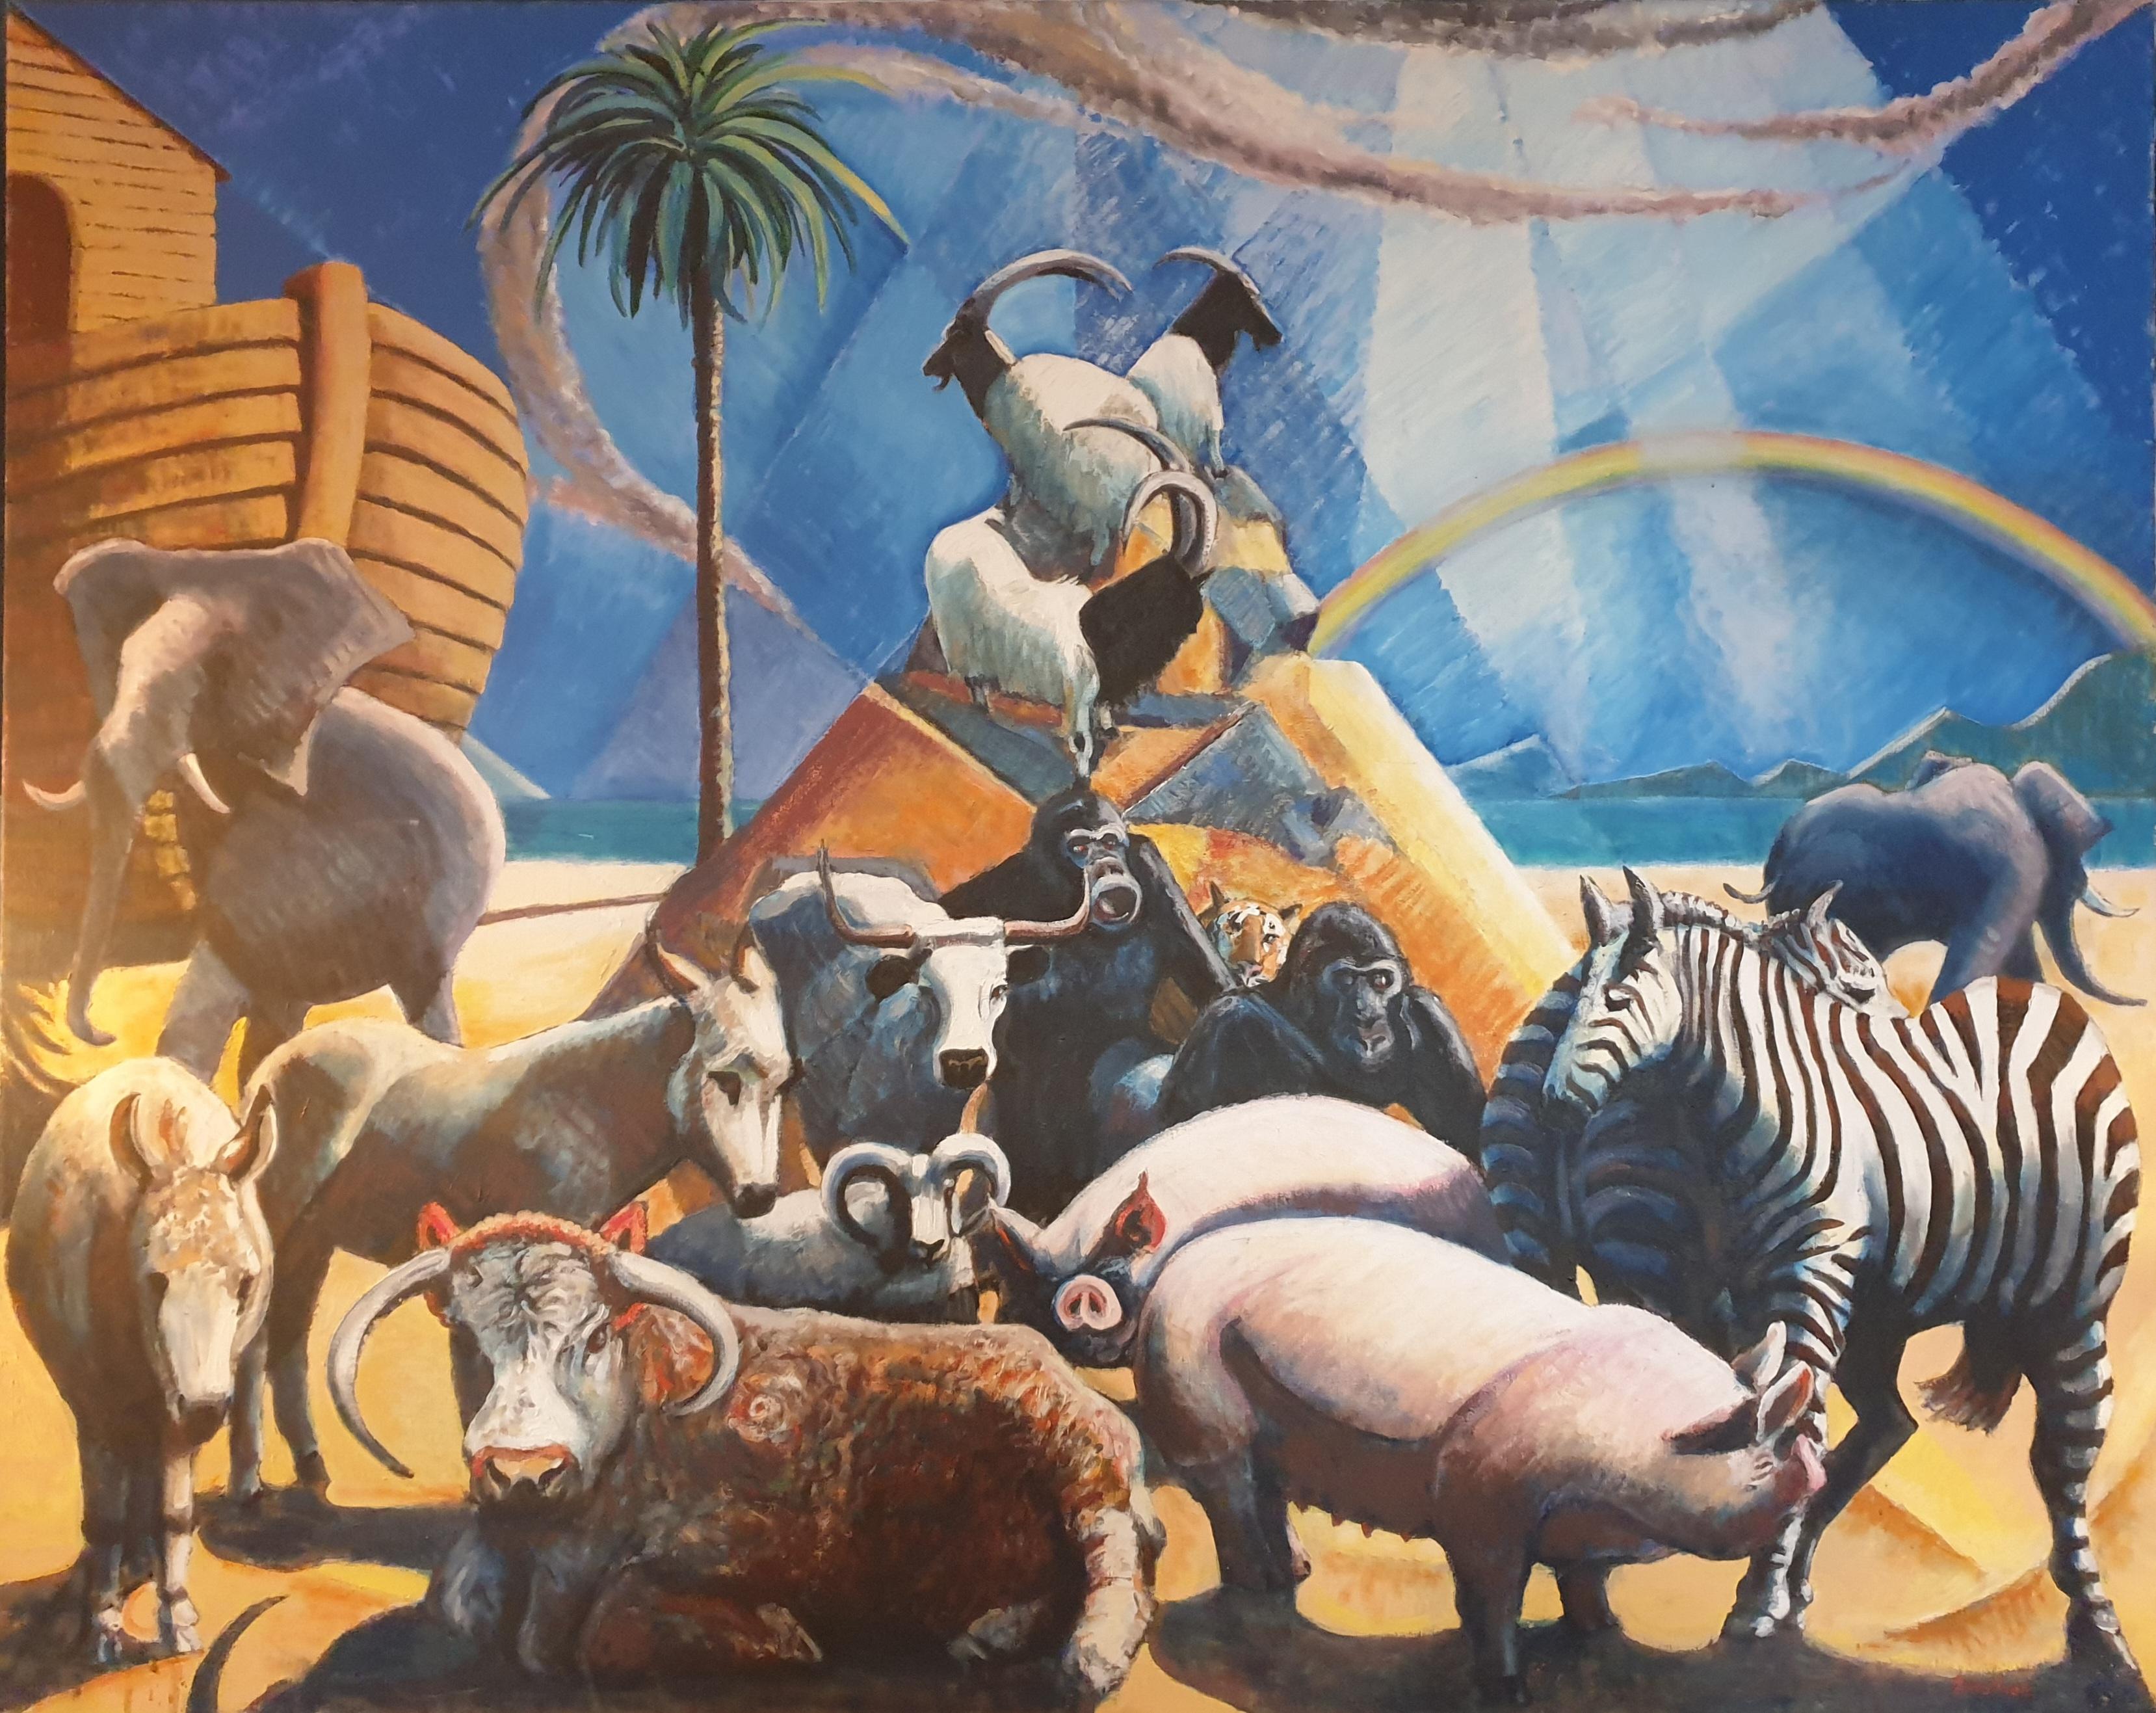 Animal Painting Derek Carruthers - Huile sur toile surréaliste à grande échelle, « Noah's Ark and the Animals »